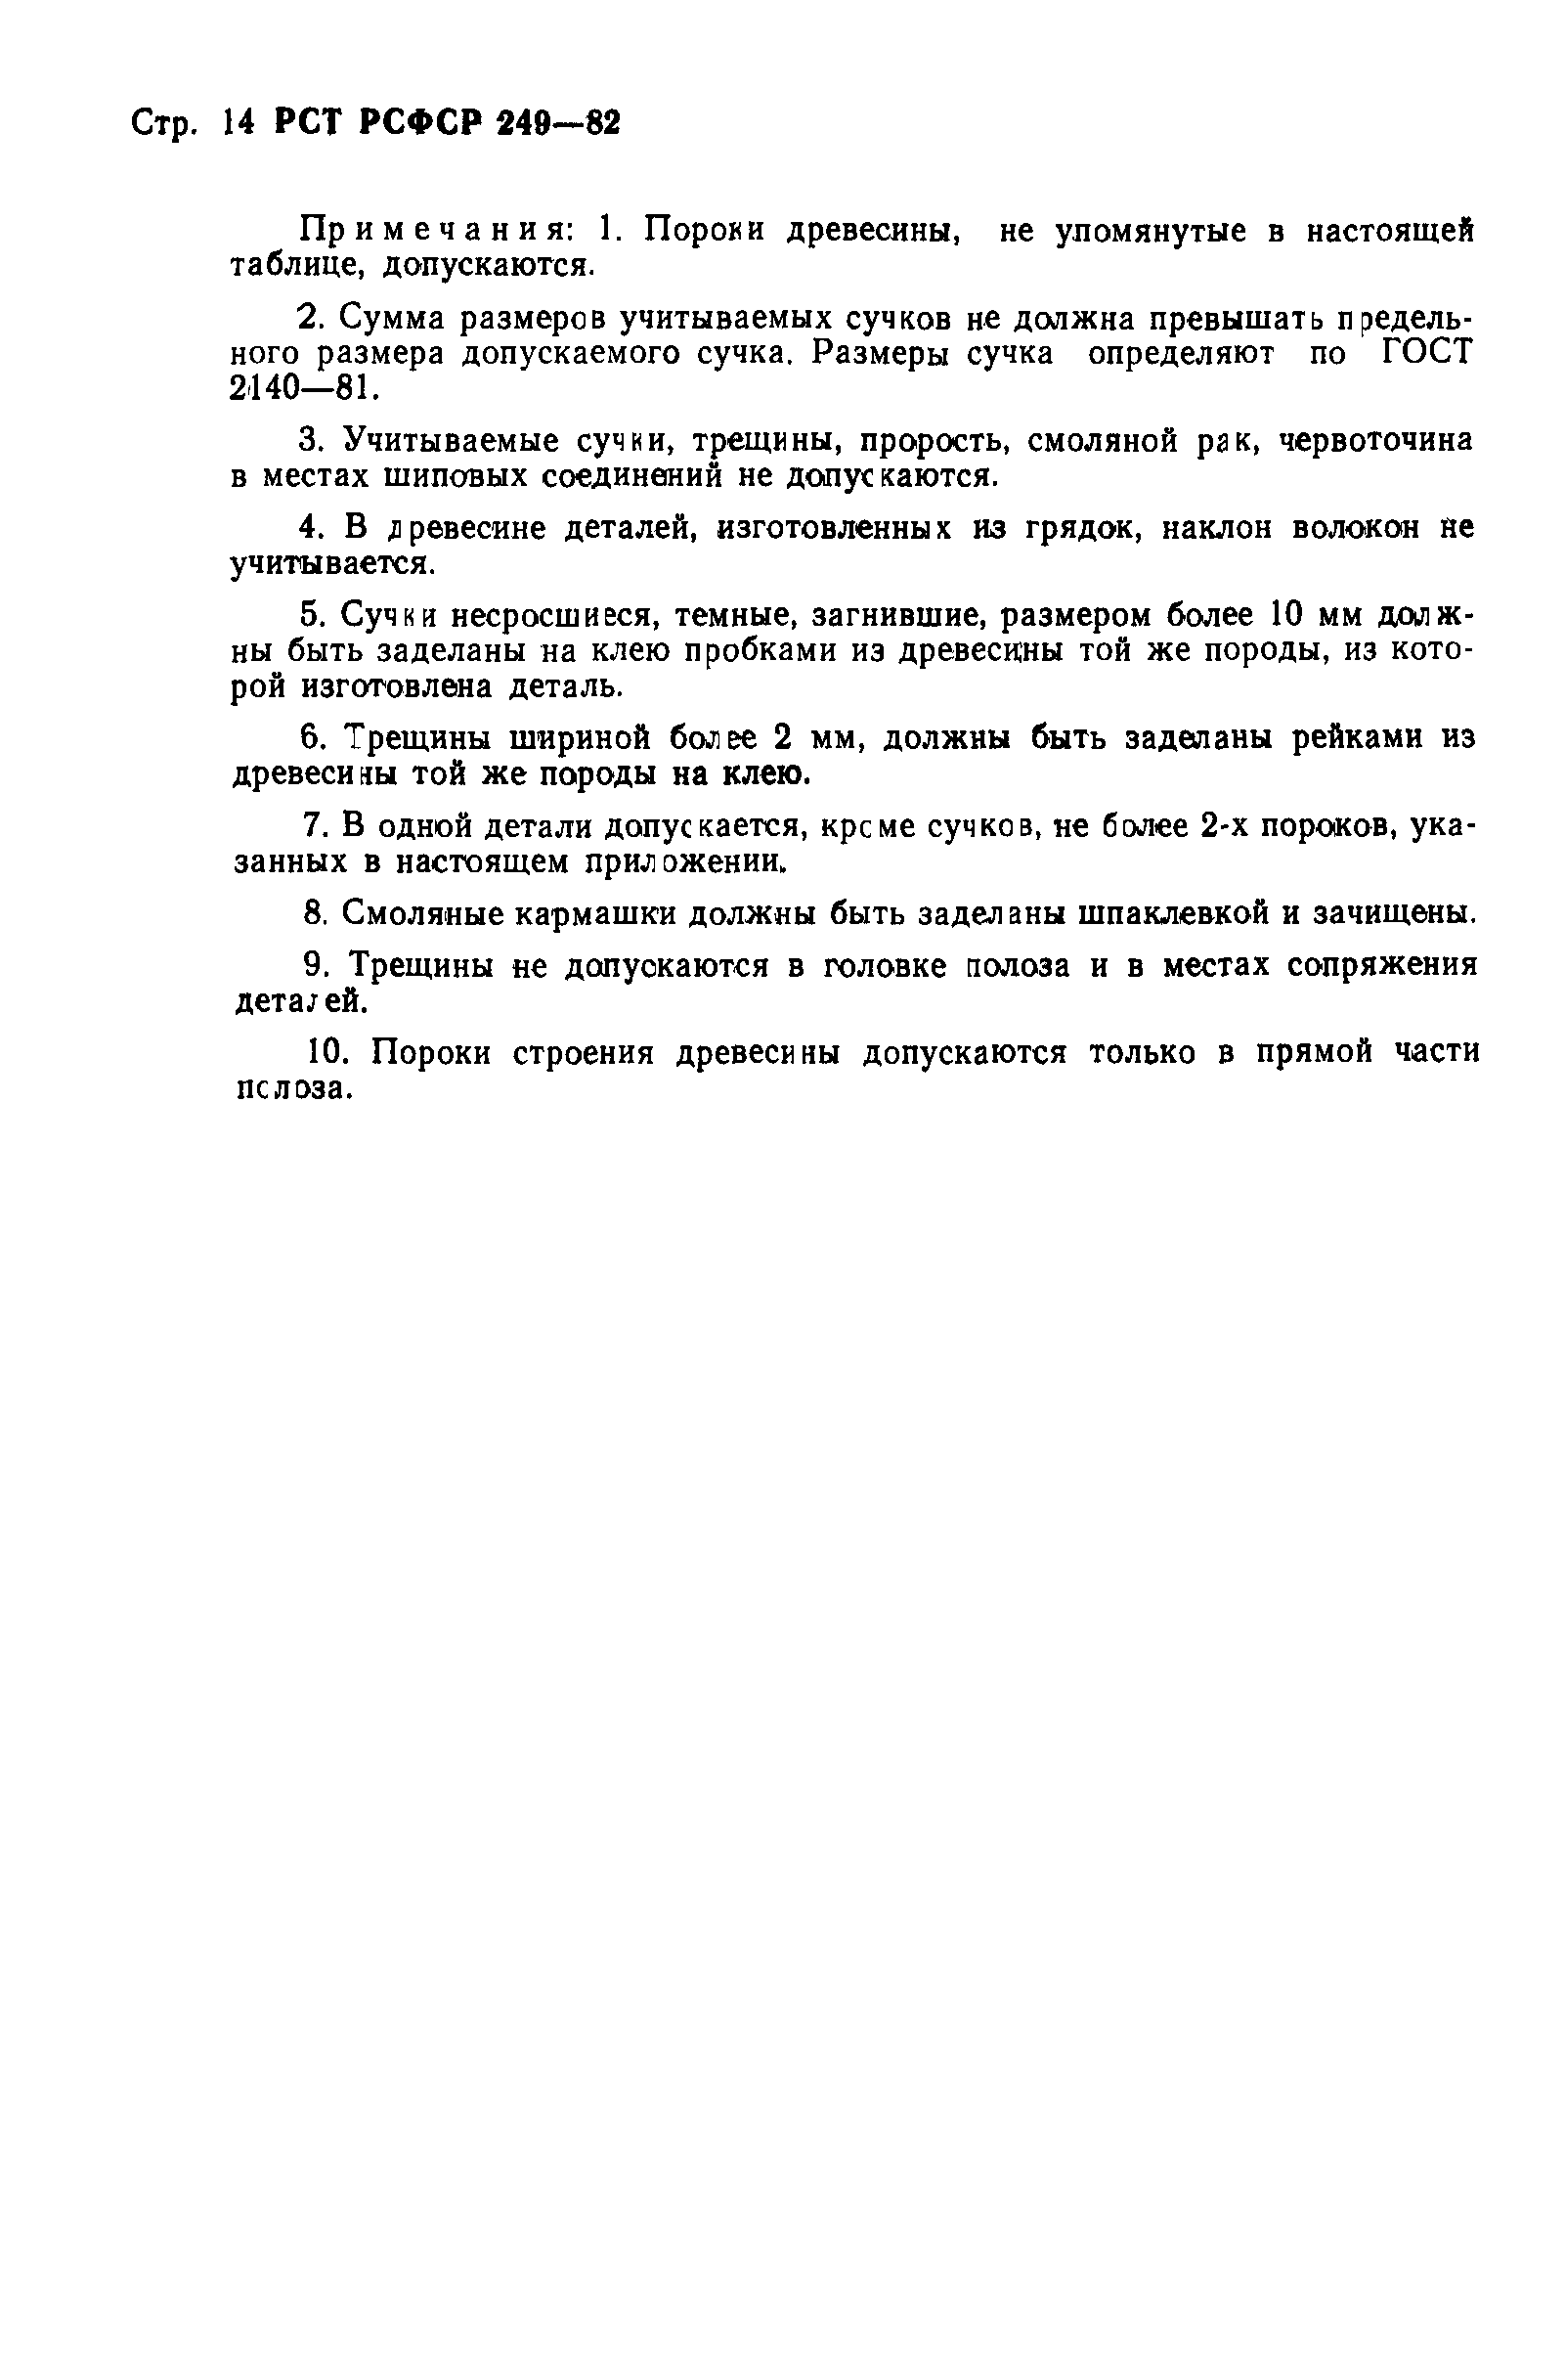 РСТ РСФСР 249-82